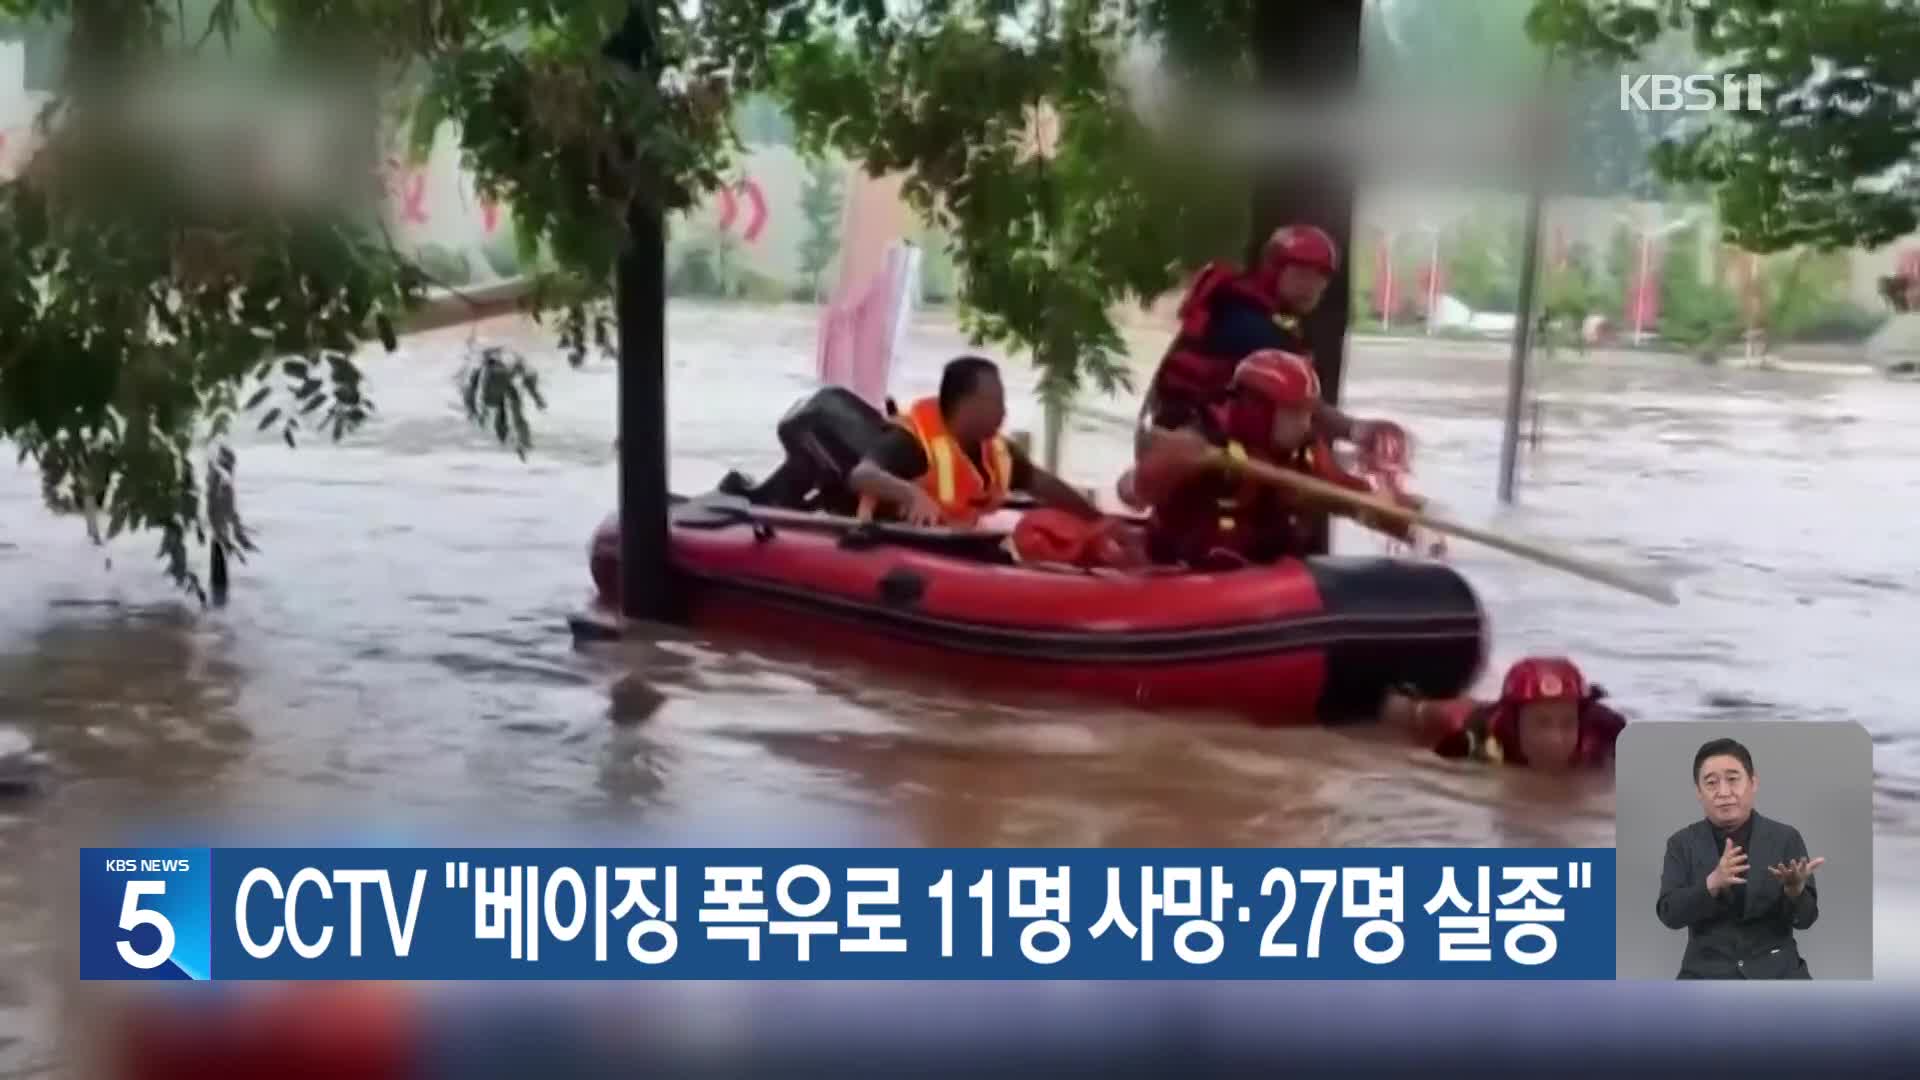 CCTV “베이징 폭우로 11명 사망·27명 실종”